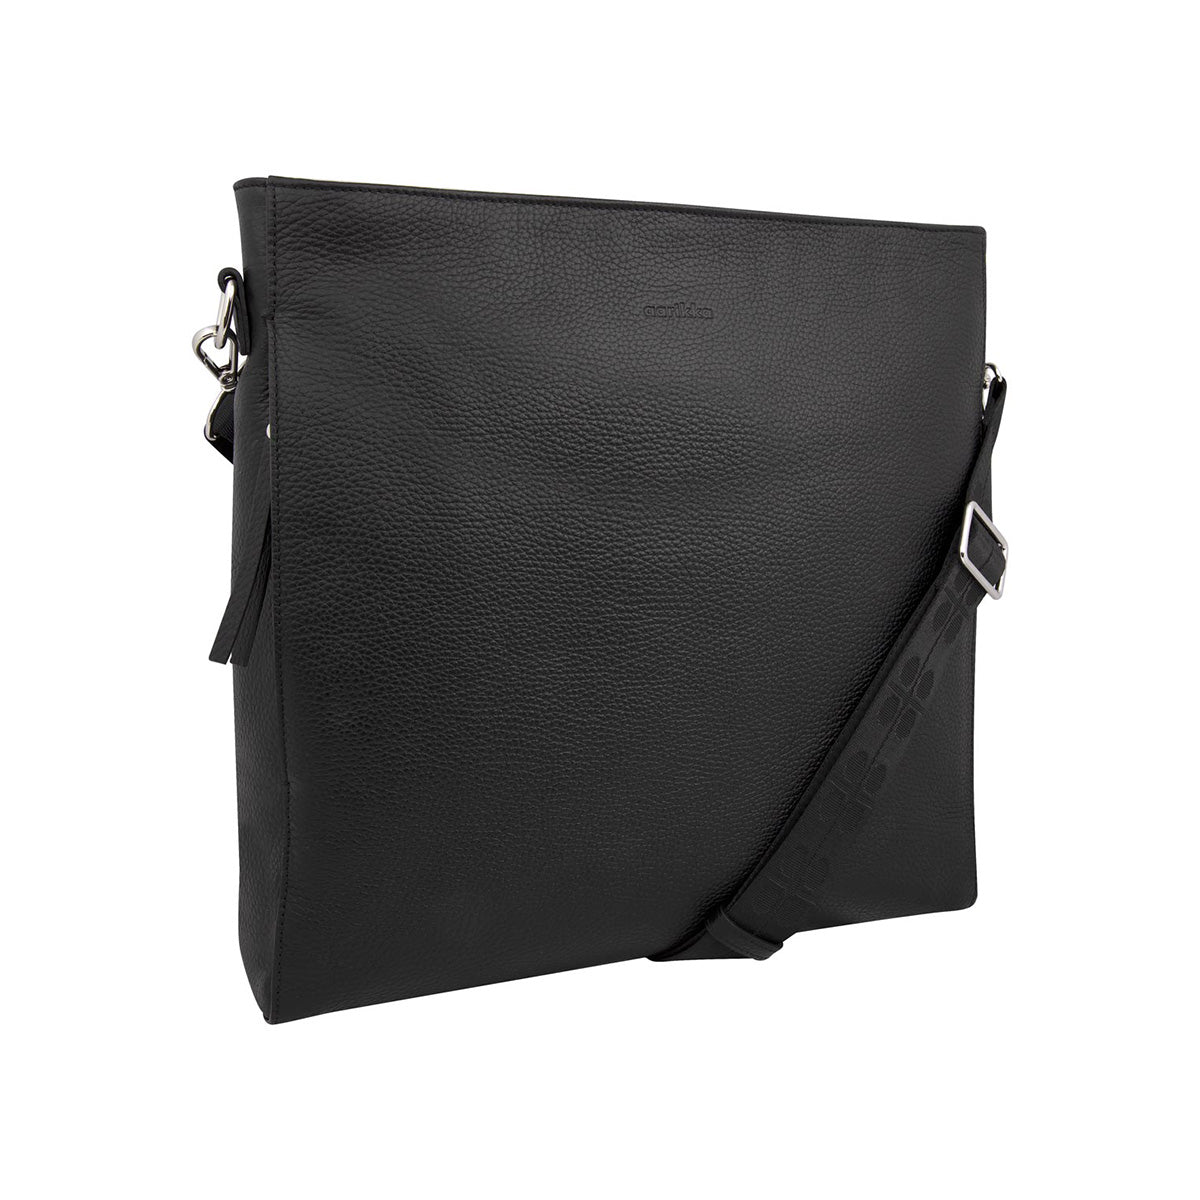 Minea shoulder bag, black